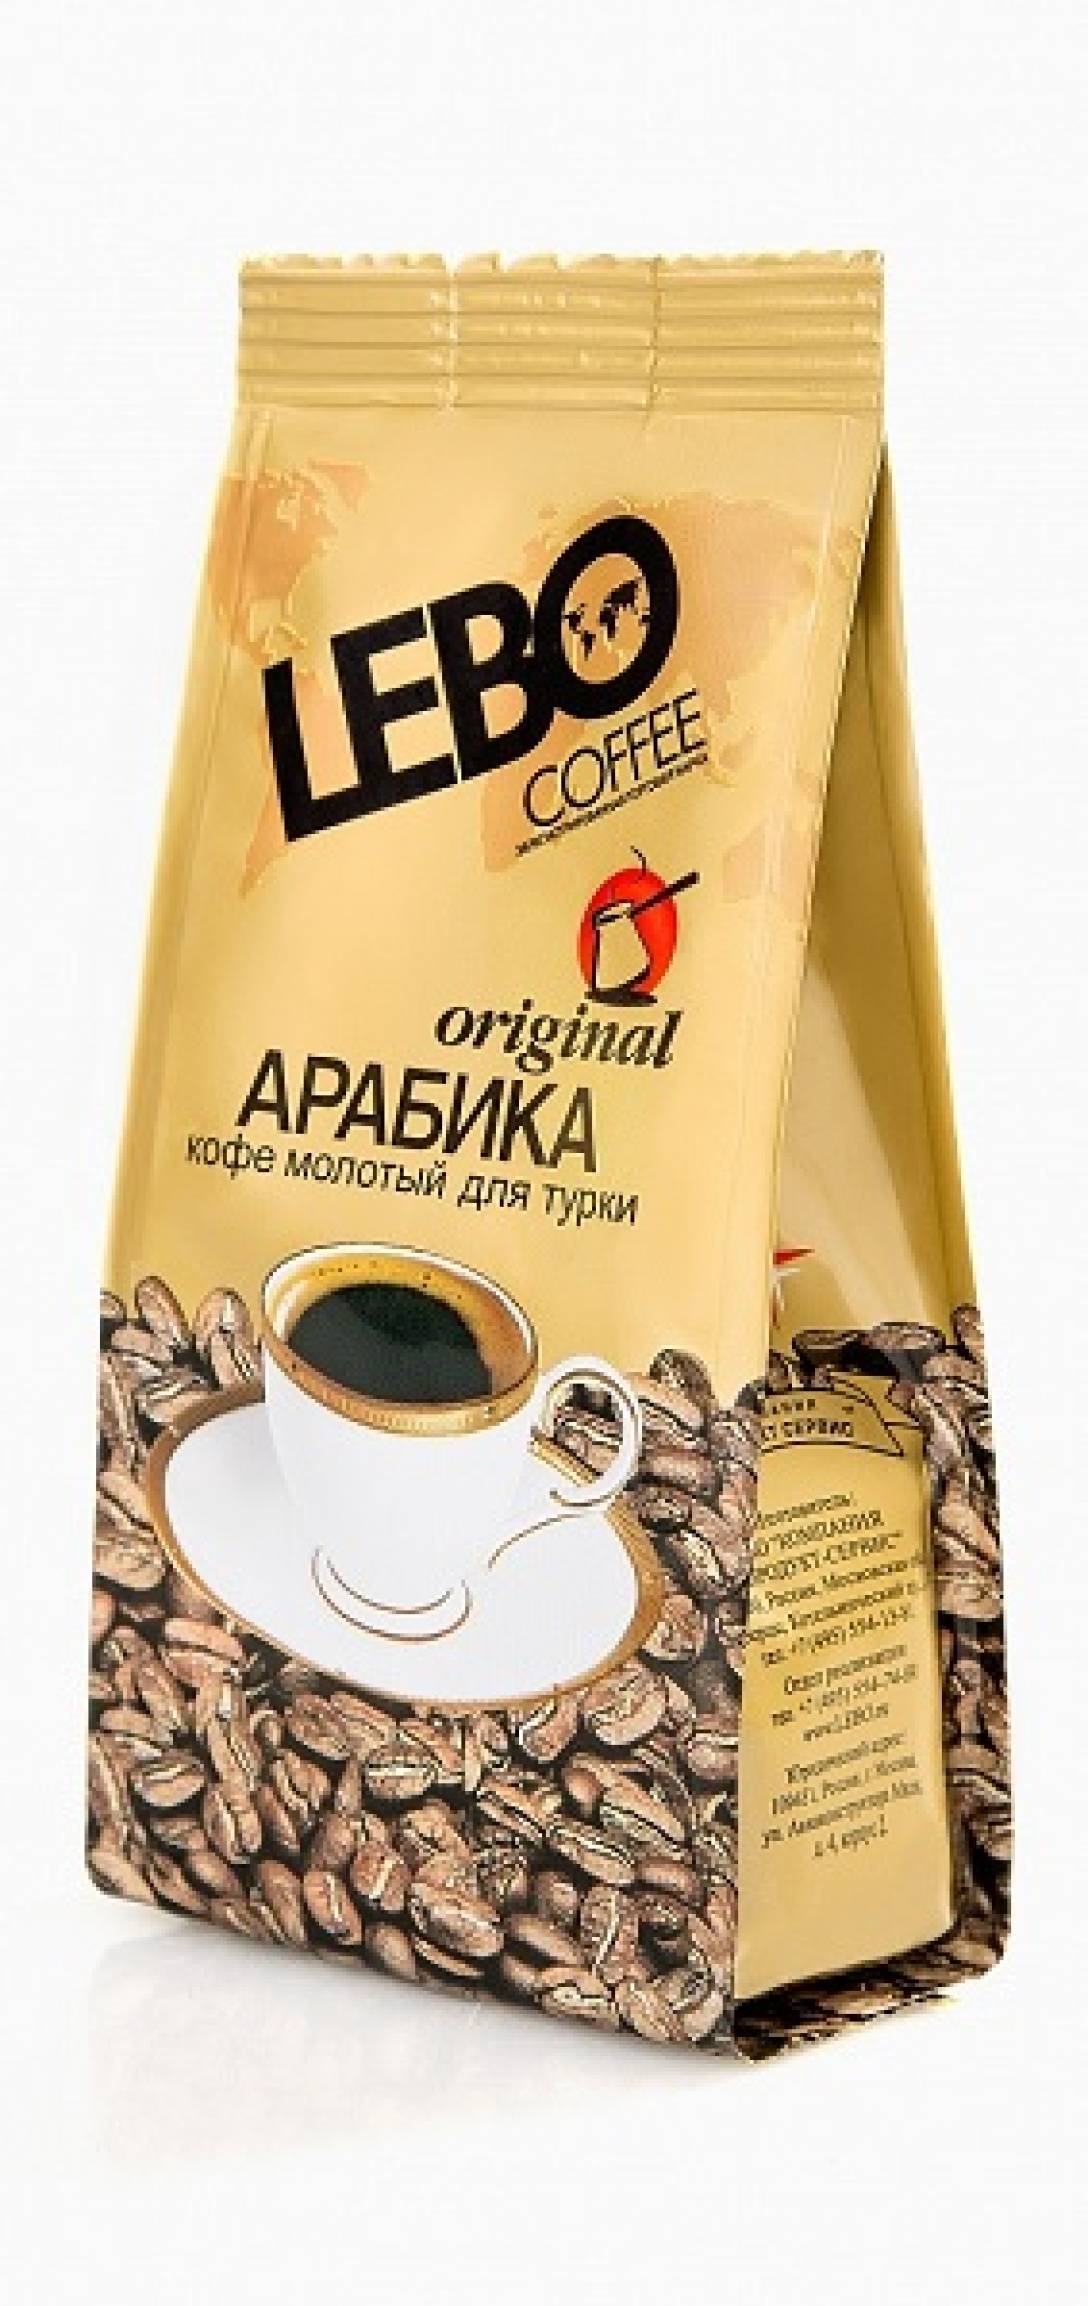 Кофе lebo - российский бренд качественного напитка